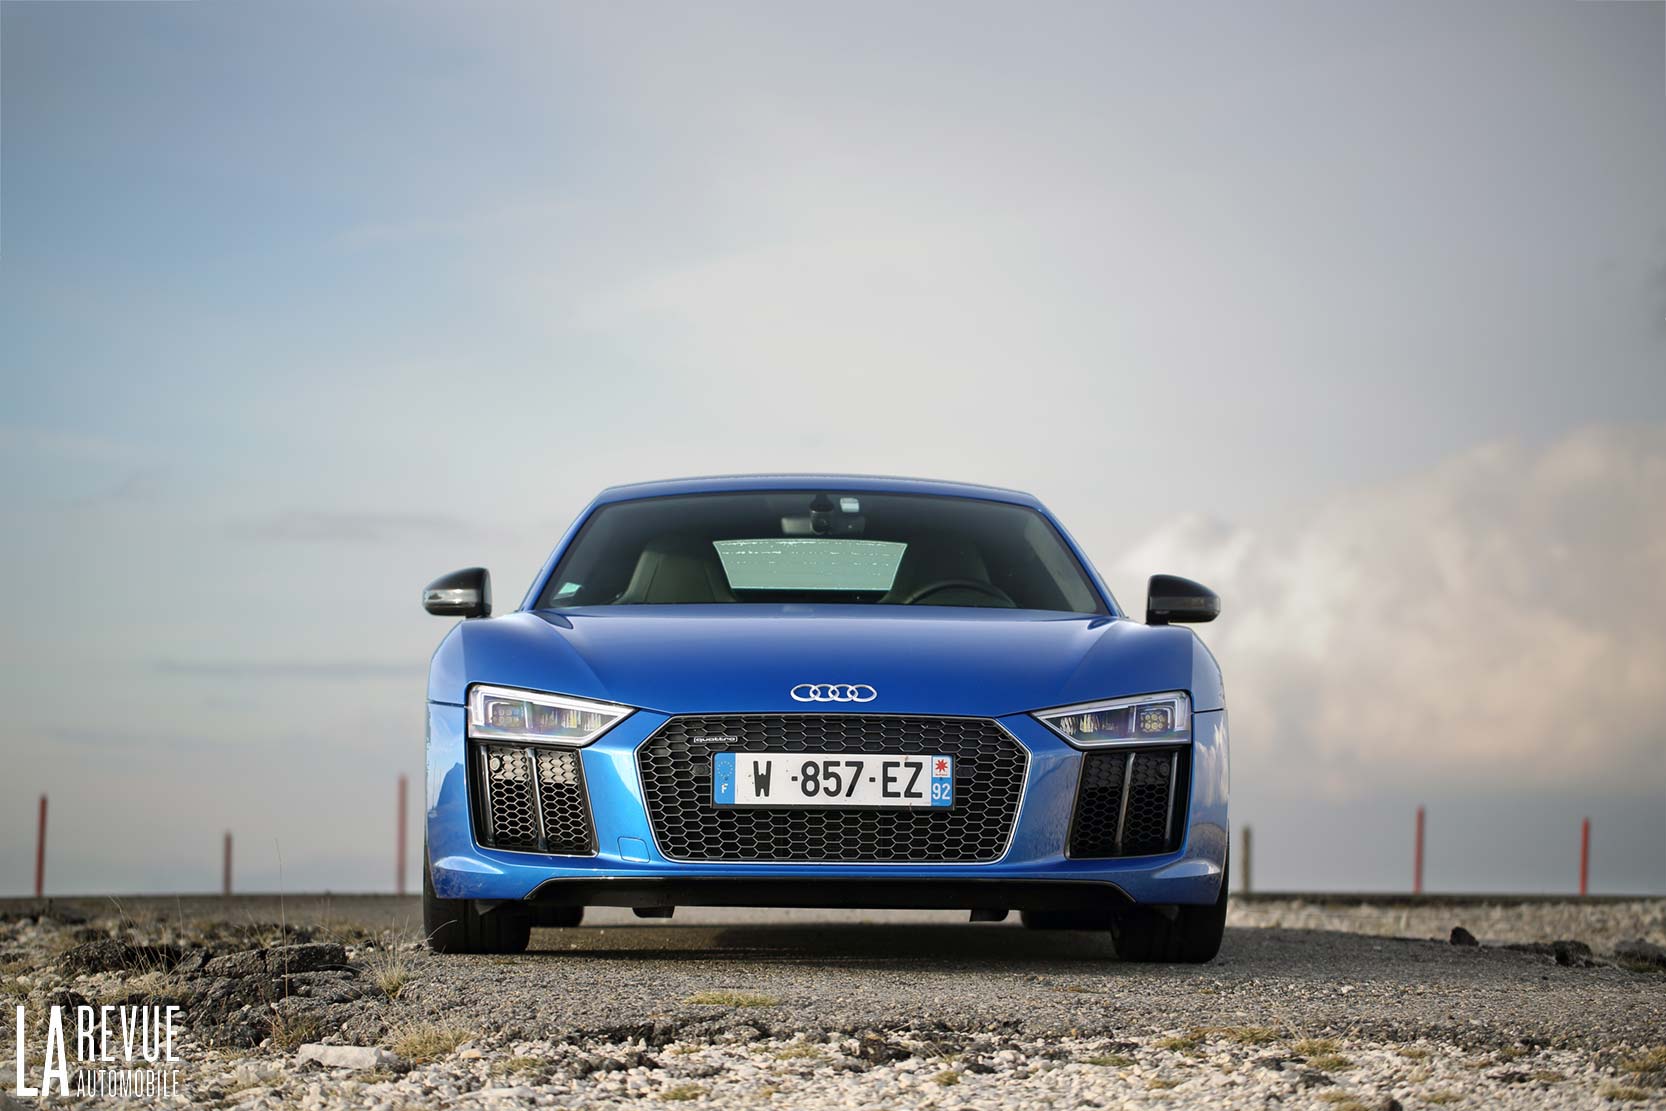 Image principale de l'actu: Audi pourrait arreter la r8 en 2020 